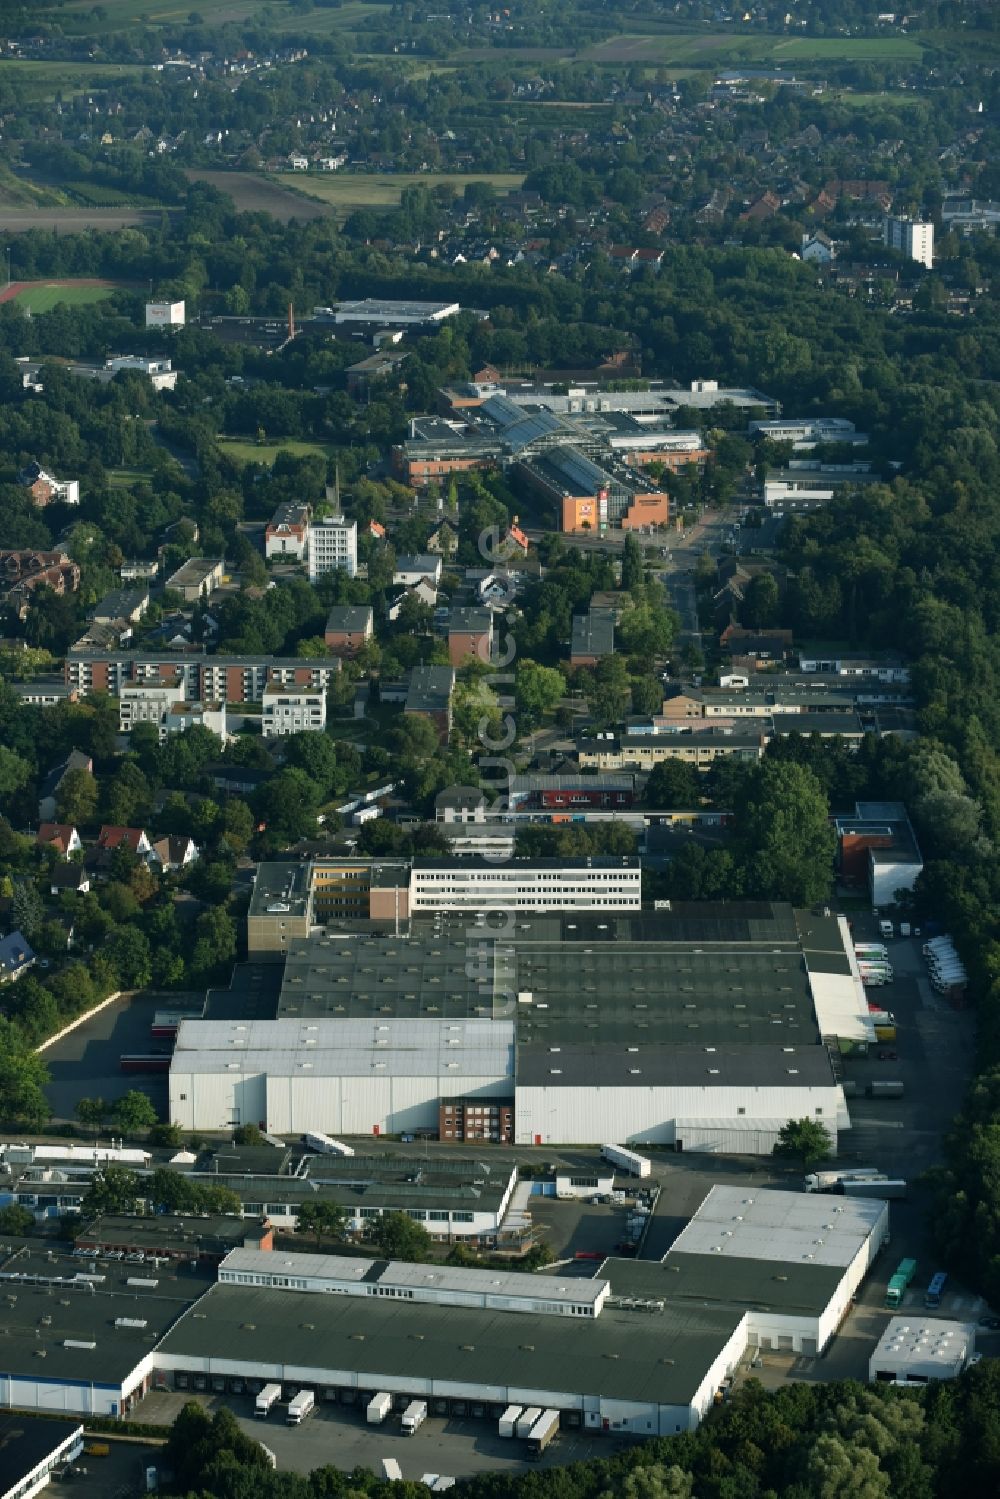 Luftbild Schenefeld - Werksgelände der Hermes Schleifmittel GmbH & CO. KG im Industriegebiet am Osterbrooksweg in Schenefeld im Bundesland Schleswig-Holstein